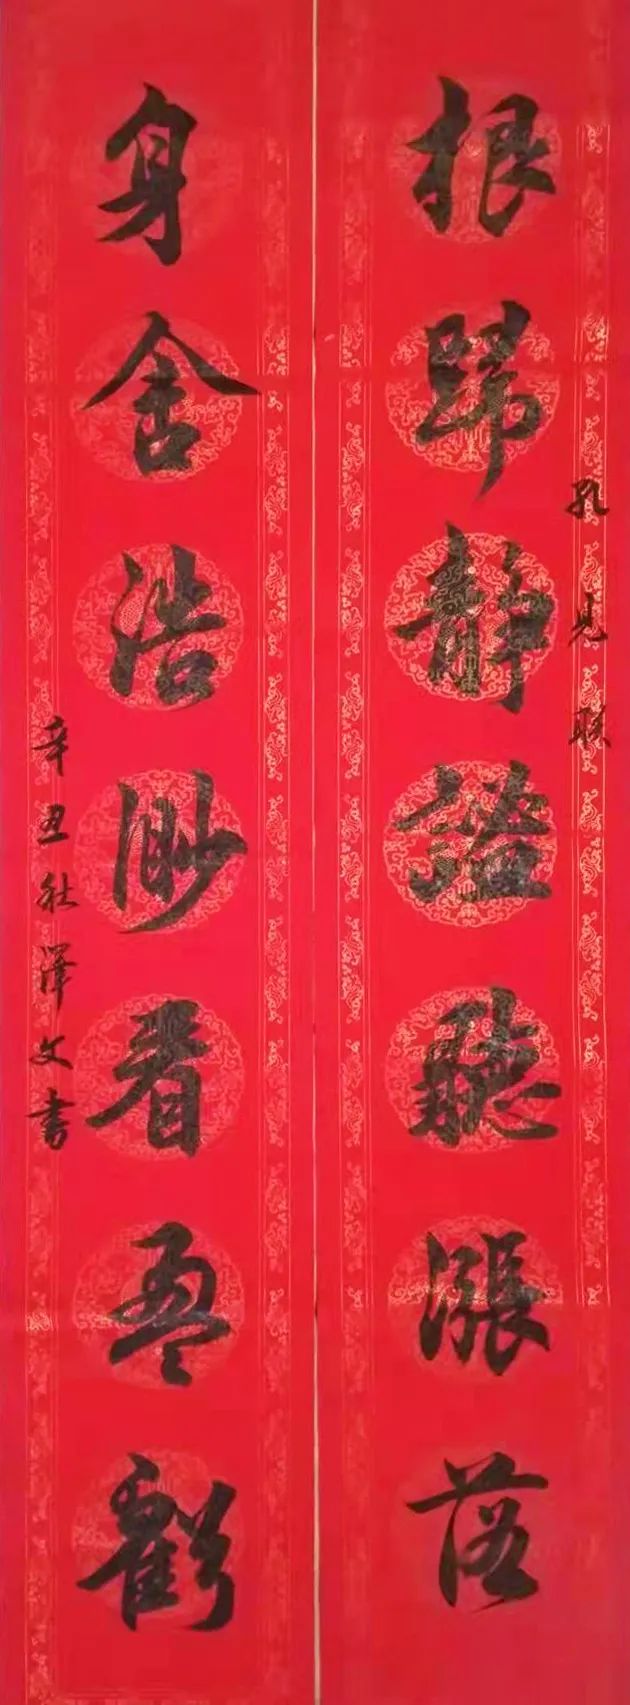 中国大众文化学会名人书画艺术发展委员会——黄泽文